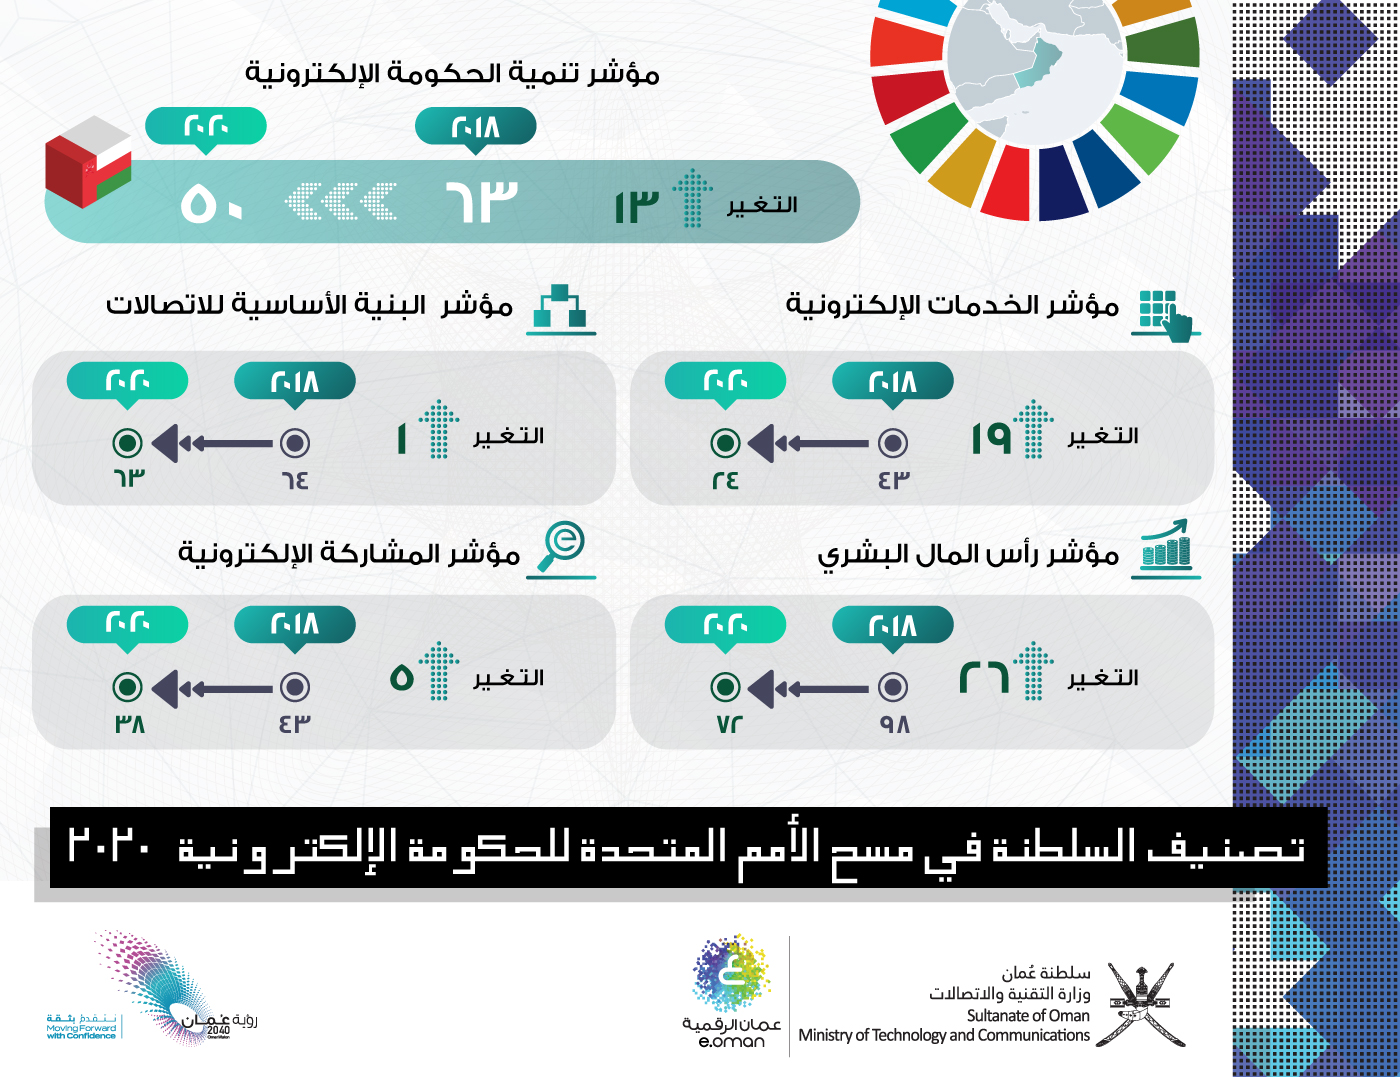 السلطنة الـ 50 عالمياً والخامس عربياً في مسح الأمم المتحدة للحكومة الإلكترونية